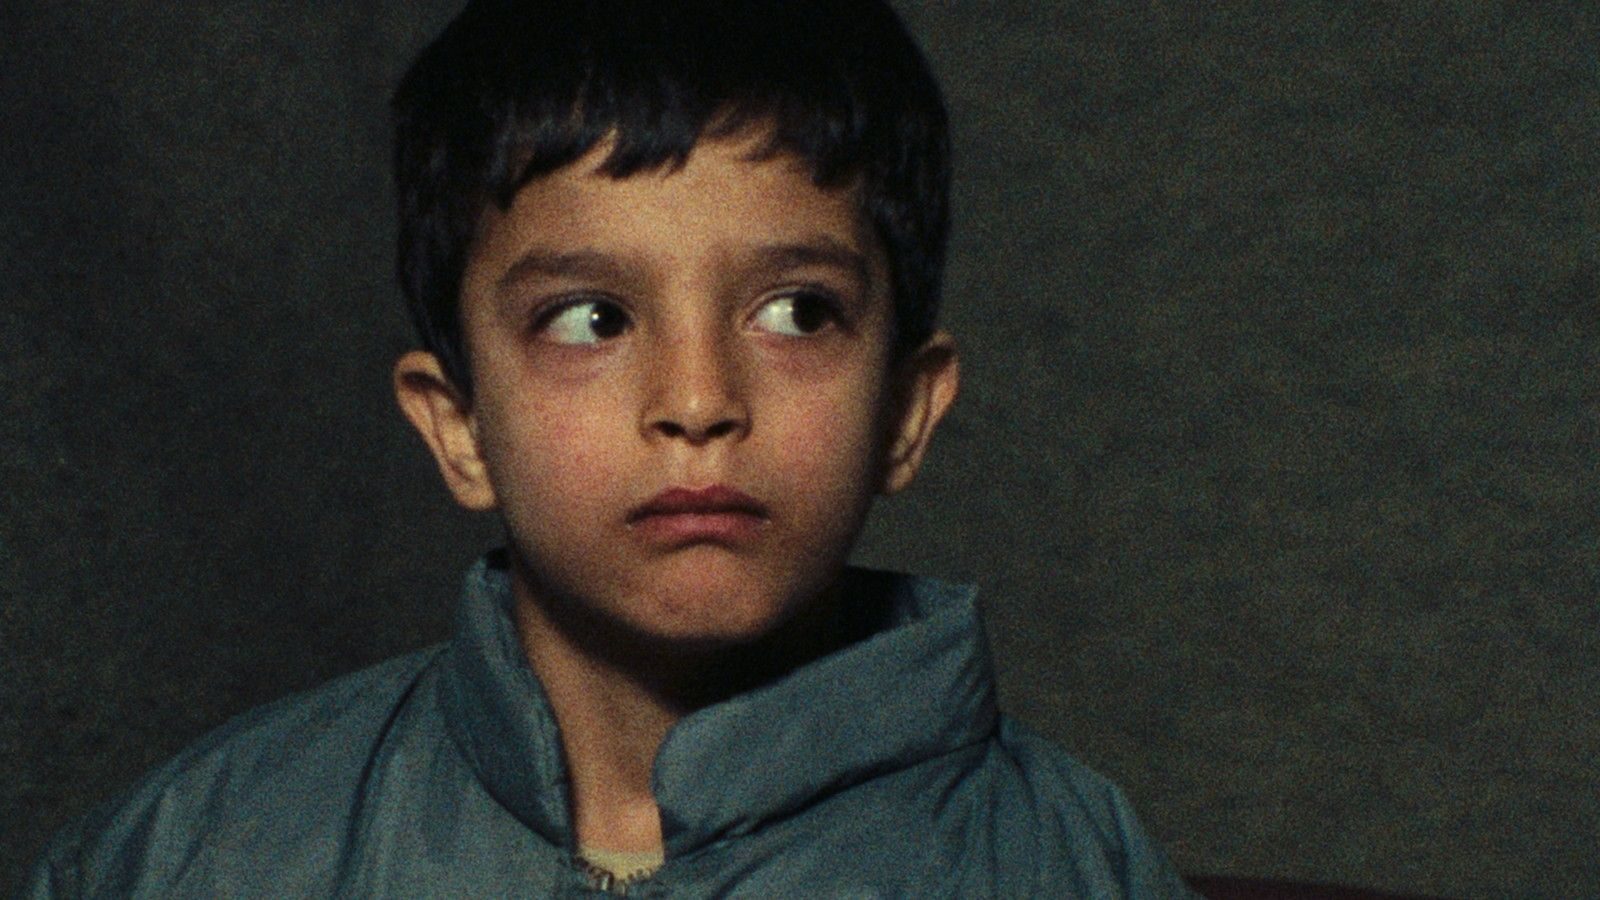 abbas kiarostami homework full movie